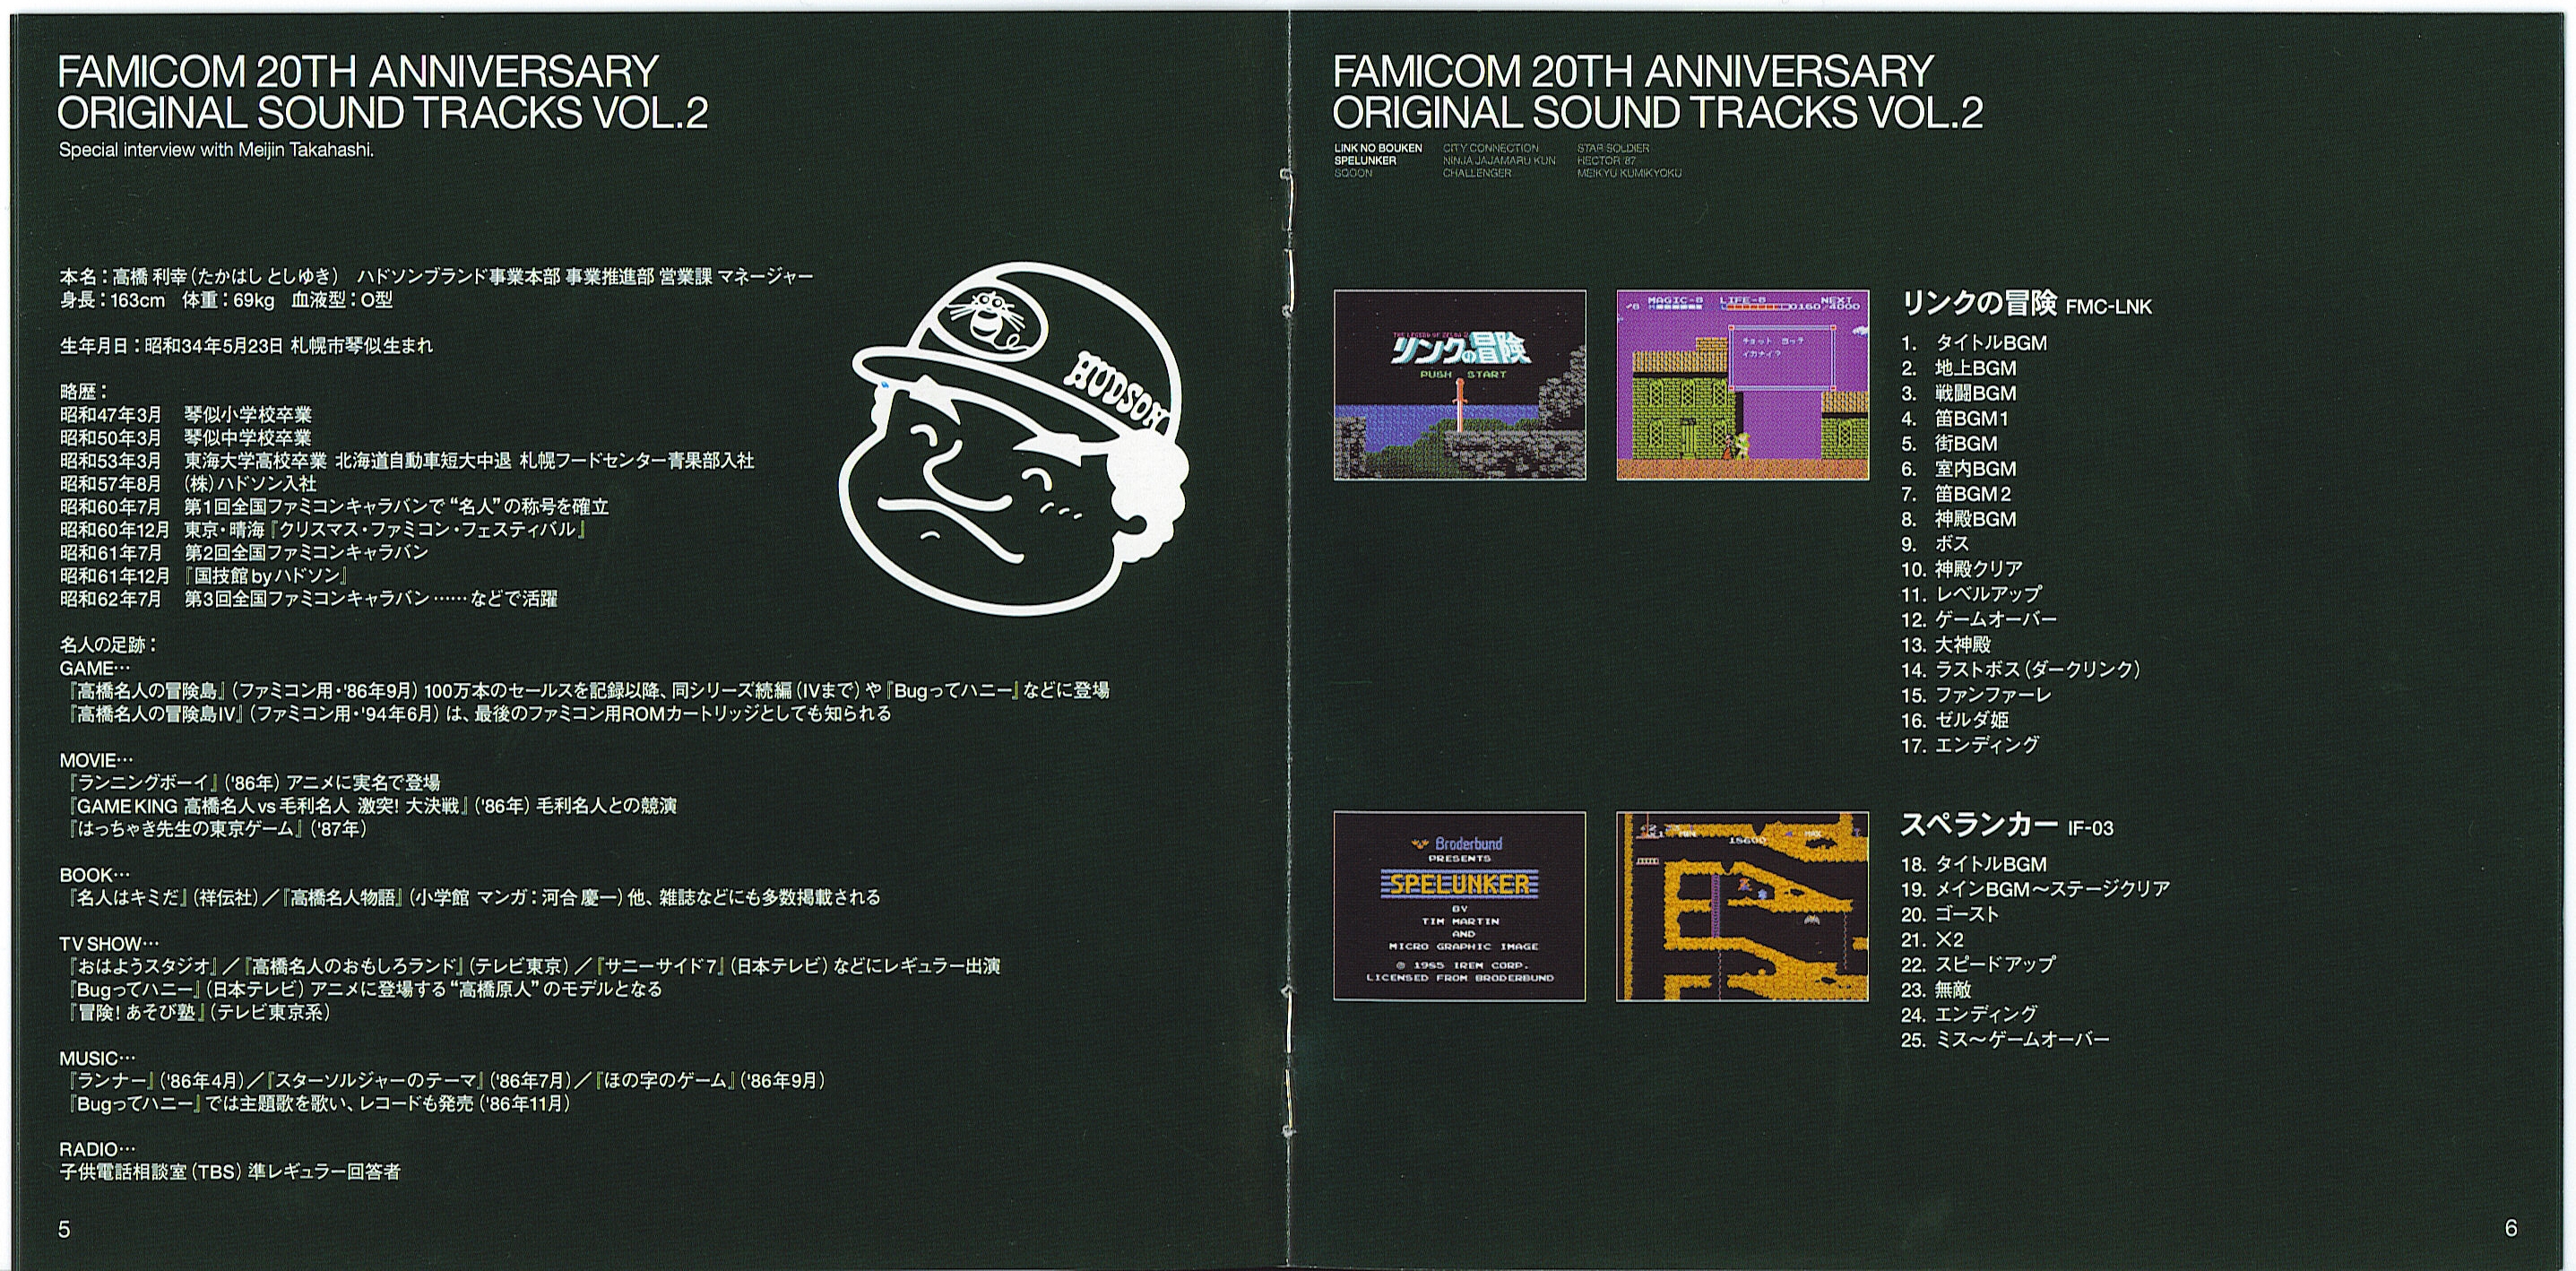 FAMICOM 20TH ANNIVERSARY ORIGINAL SOUND TRACKS VOL.2 (2004) MP3 